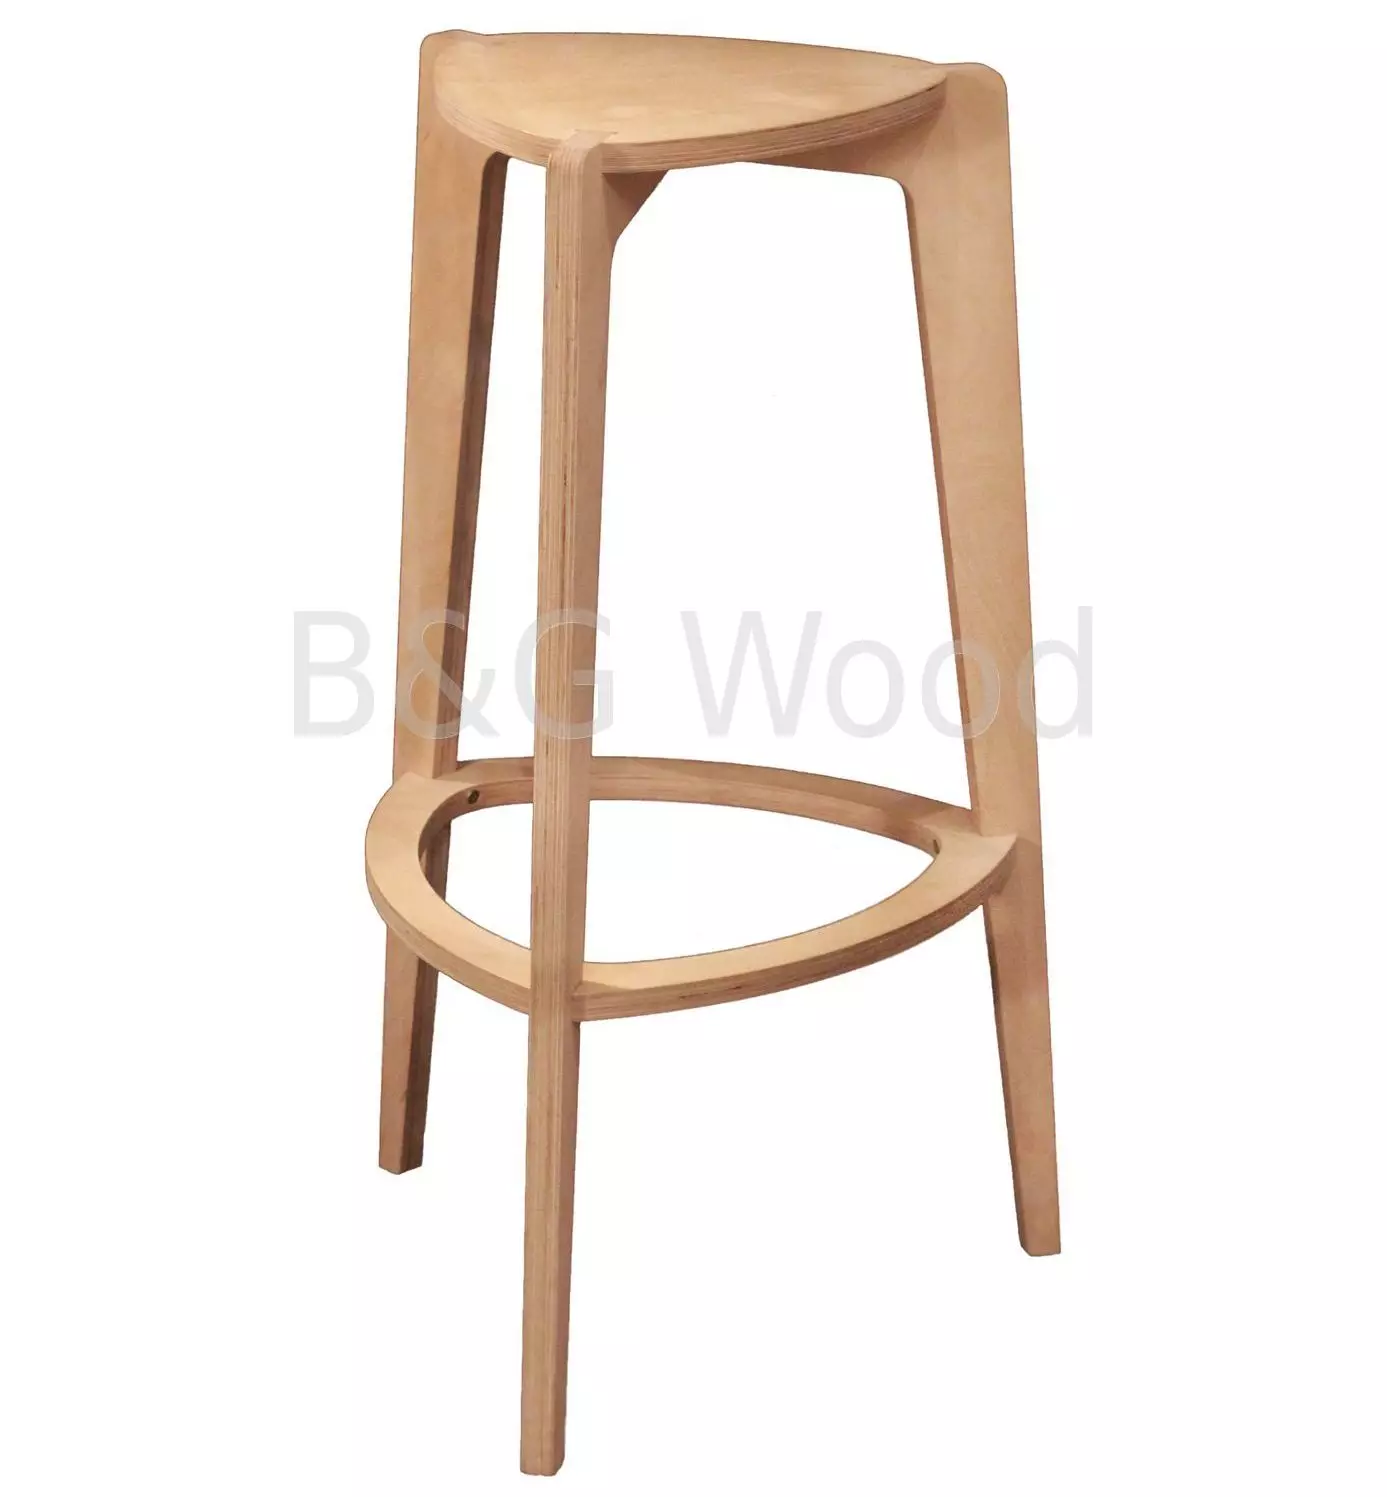 Bar stoele vir die kombuis (56 foto's): stoele vir bar rakke, hout en vou kombuis stoele, grootte van lae en hoë modelle. Hoe om te kies? 23460_16